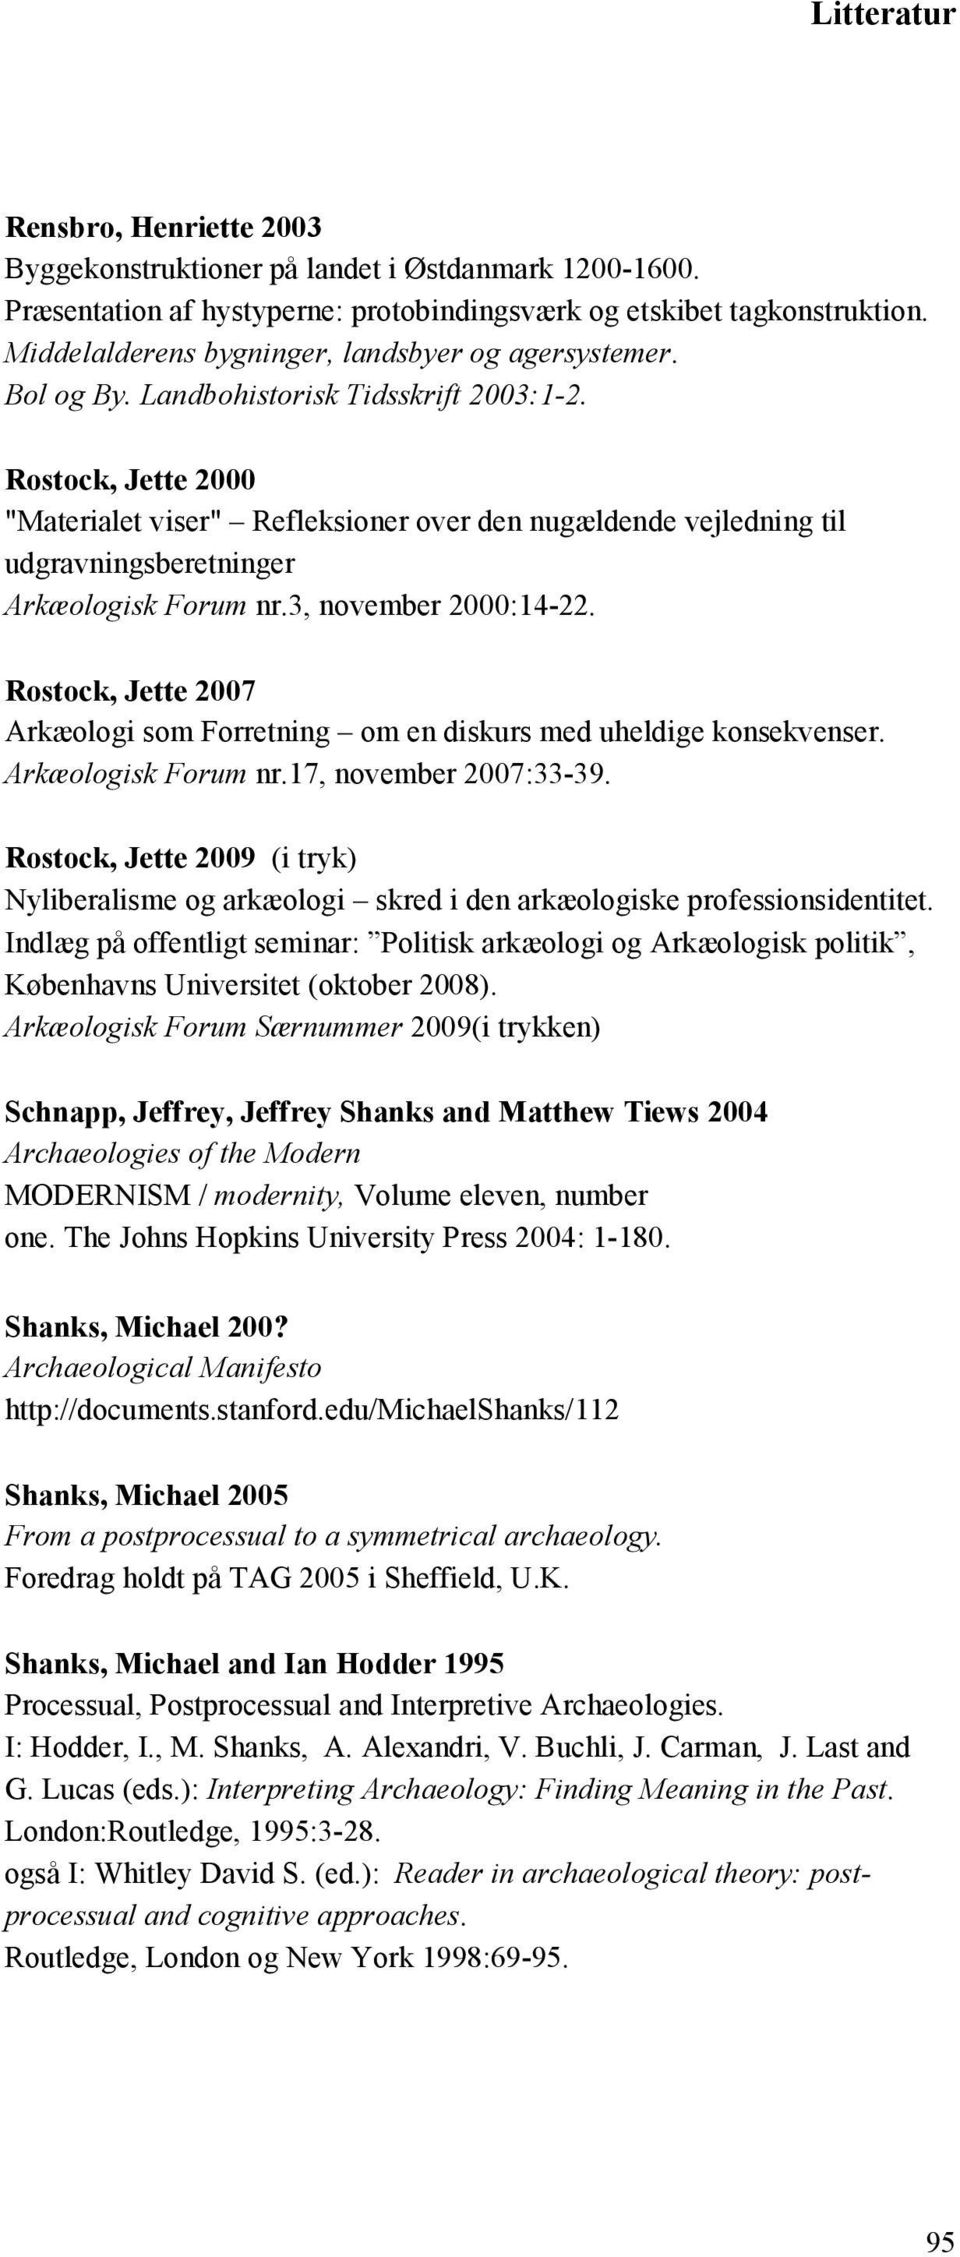 Rostock, Jette 2000 "Materialet viser" Refleksioner over den nugældende vejledning til udgravningsberetninger Arkæologisk Forum nr.3, november 2000:14-22.